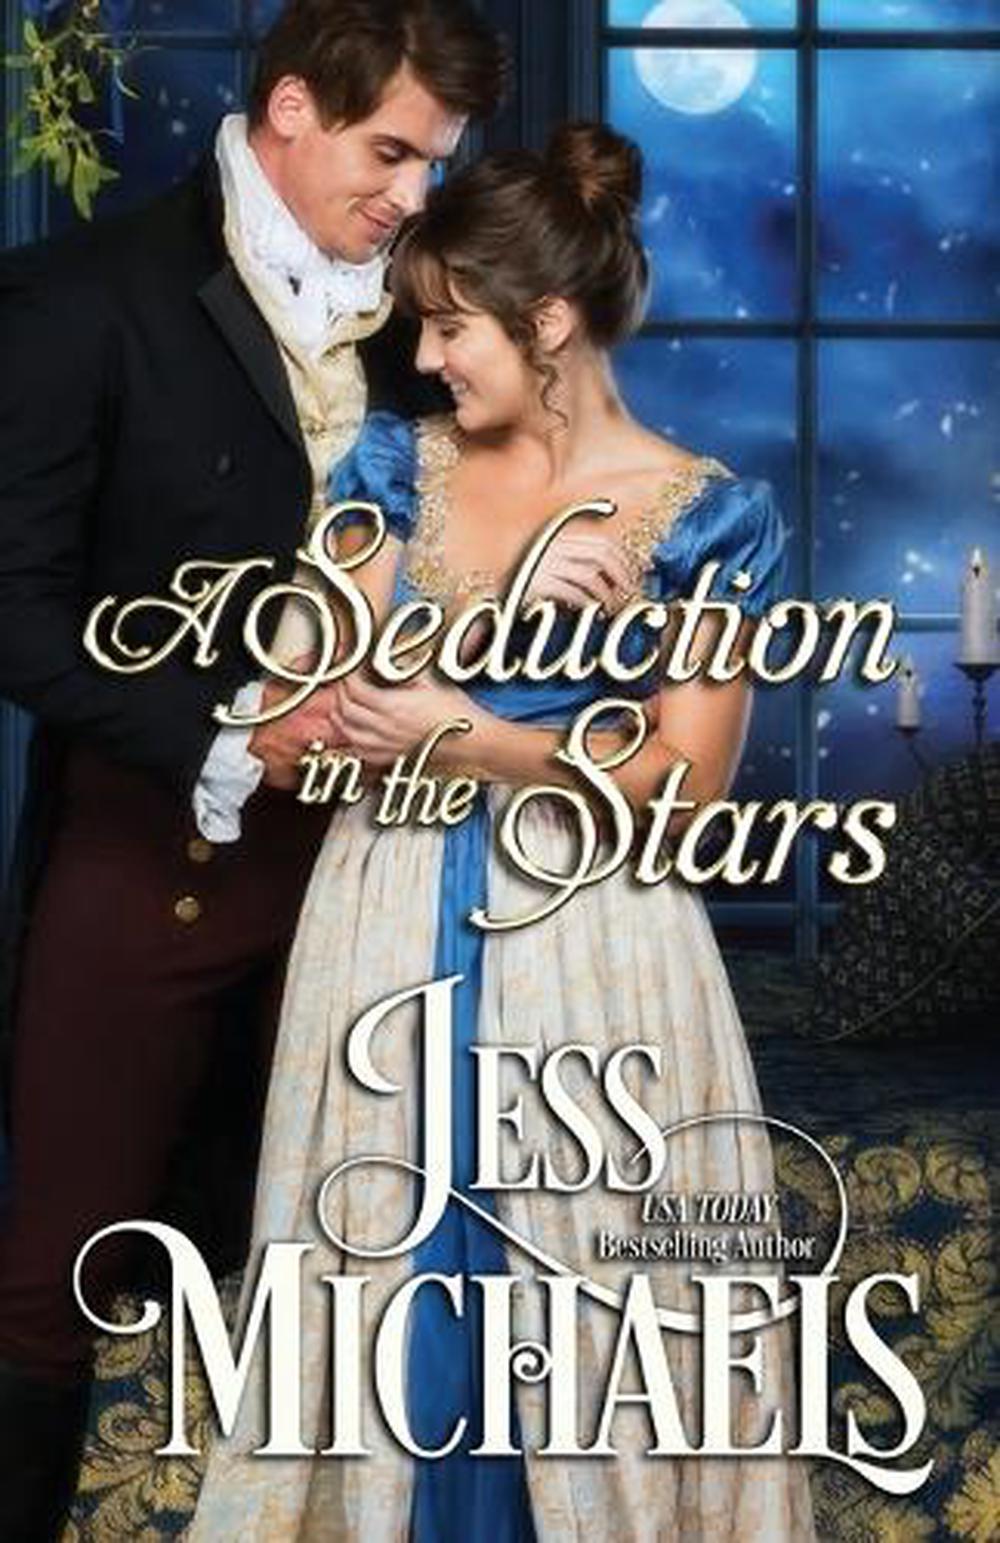 Celestial Seduction by Jessica E. Subject